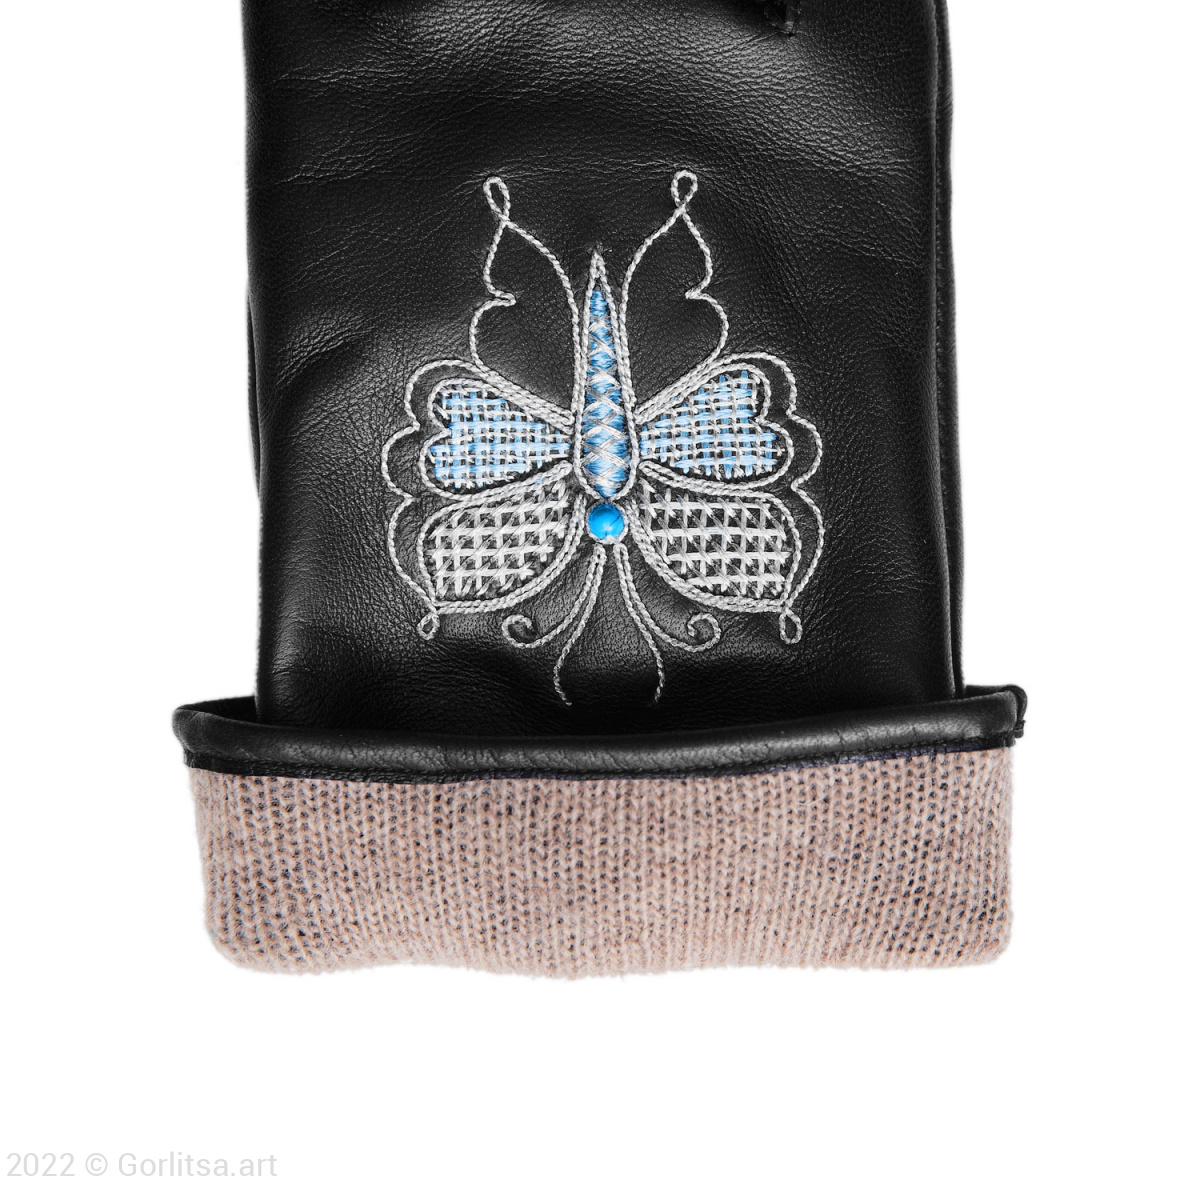 Перчатки женские «Бабочка»,112/154, цвет: чёрный, /серебро, кожа нат. кожа Киселева Г.А. фото 4